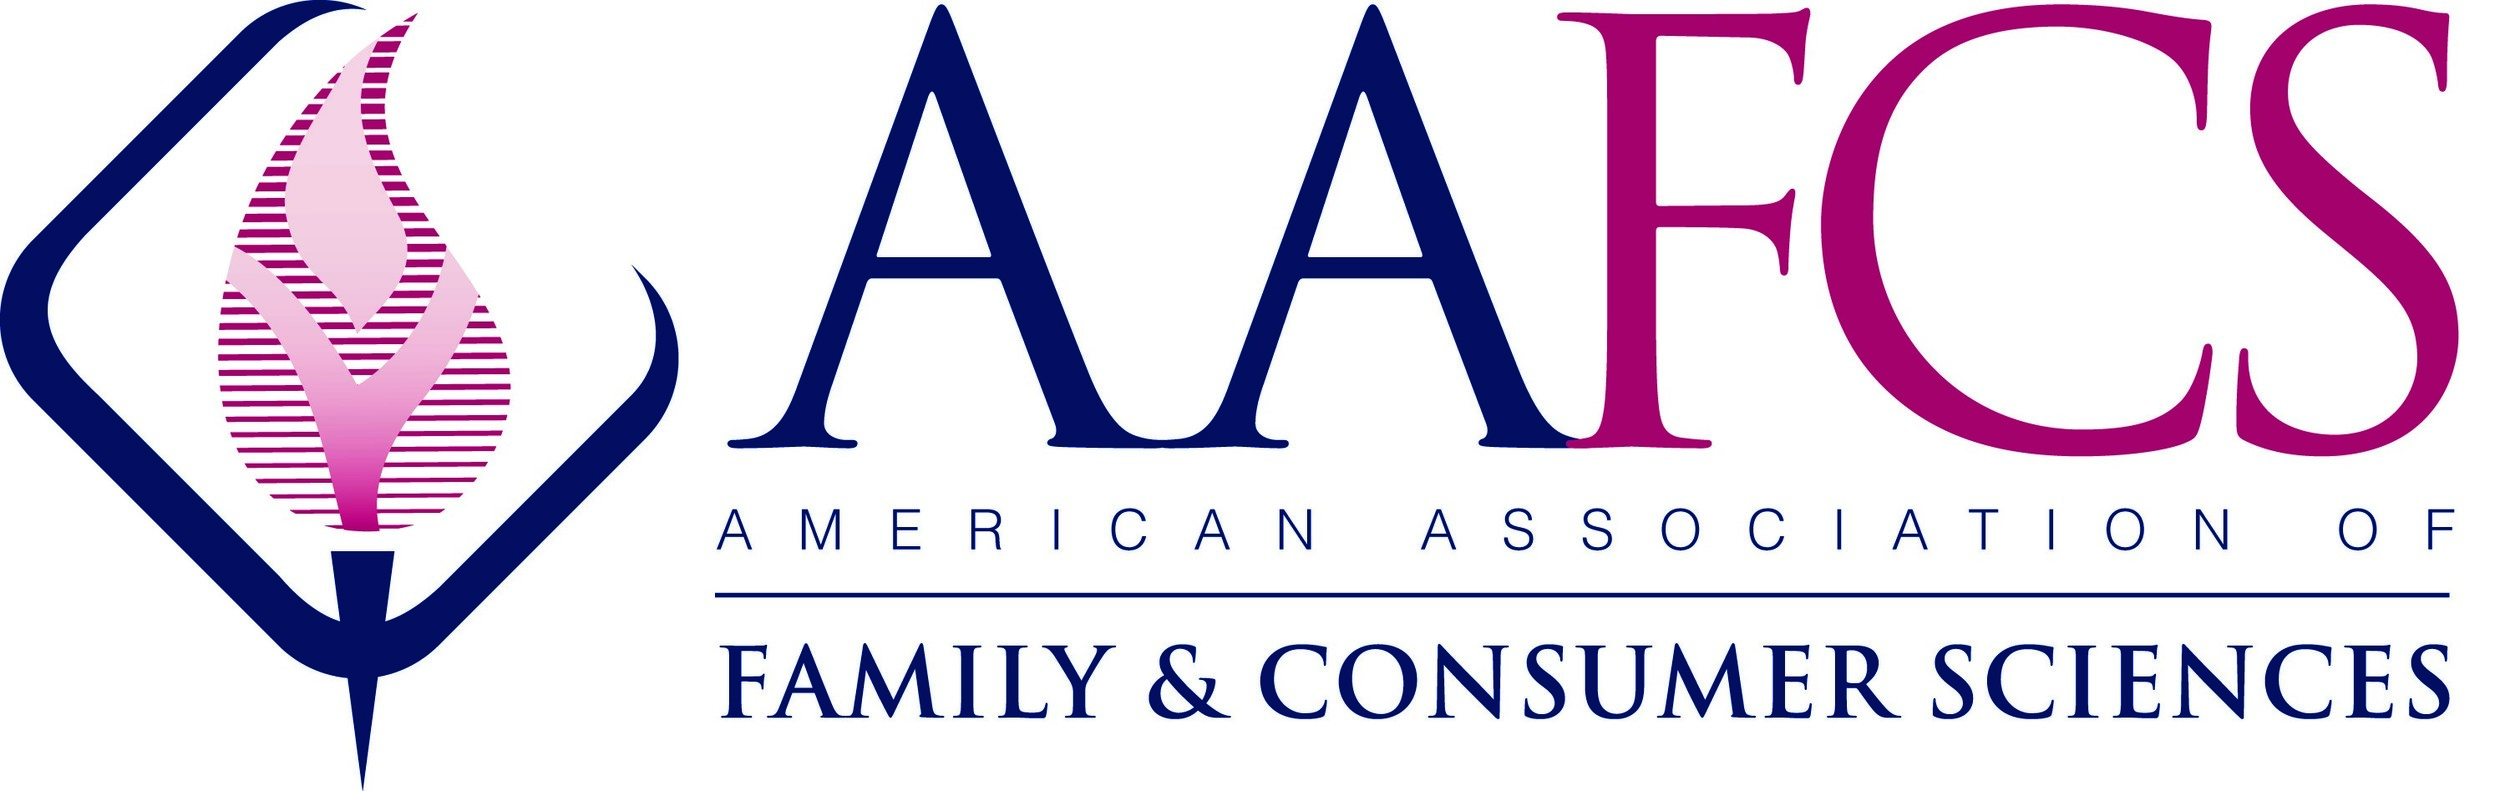 AAFCS Logo.jpg